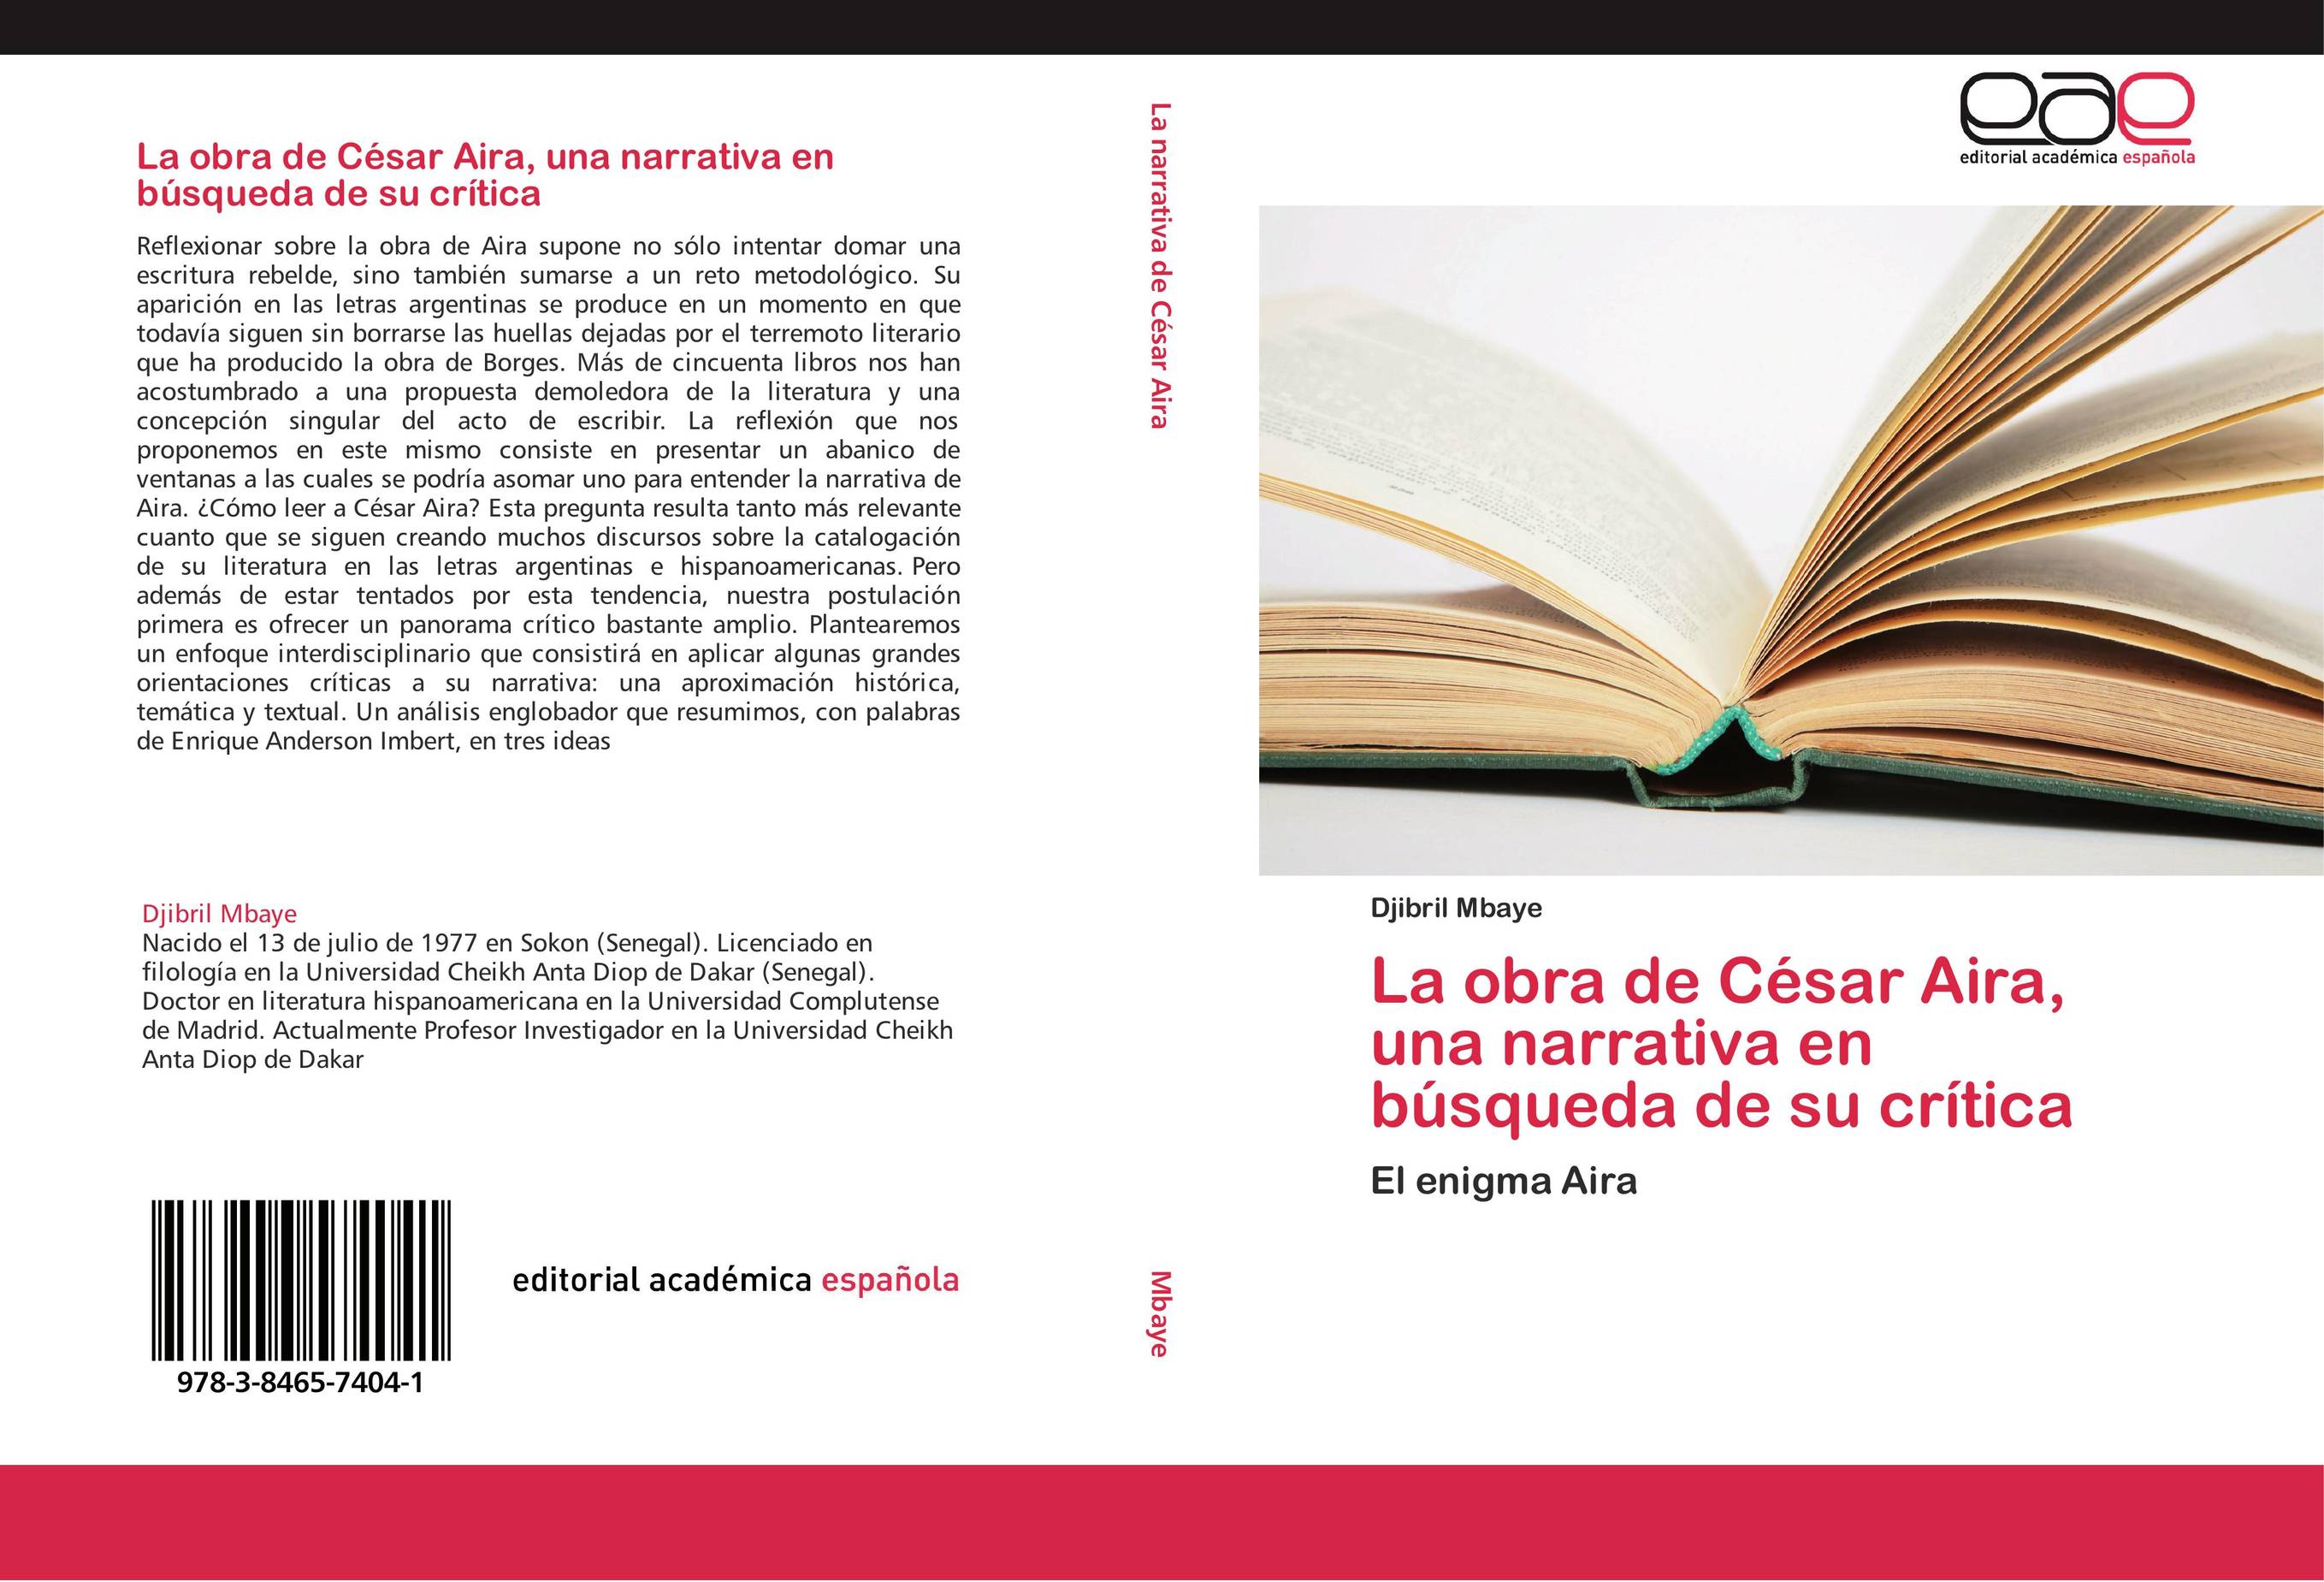 La obra de César Aira, una narrativa en búsqueda de su crítica